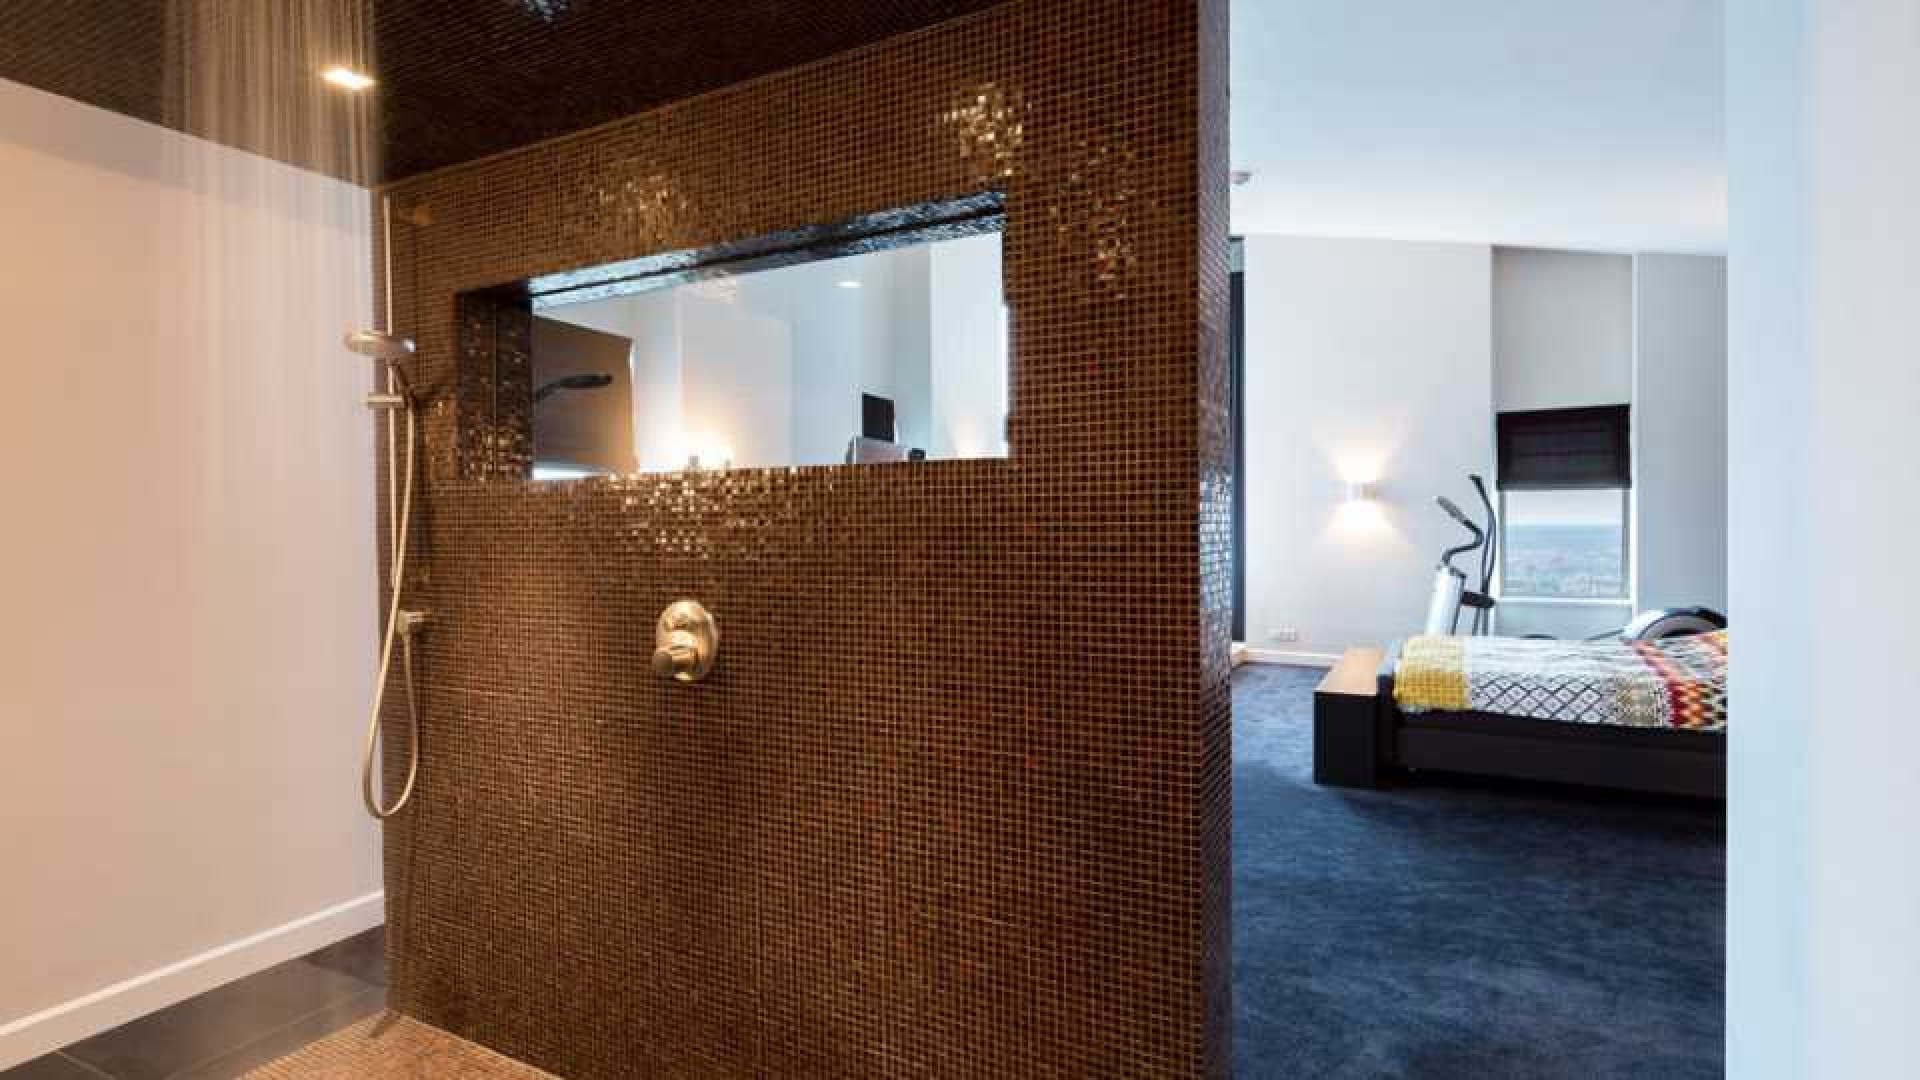 Amanda Krabbe en haar man Harrie Kolen zetten hun luxe penthouse in stille verkoop. Zie foto's 22